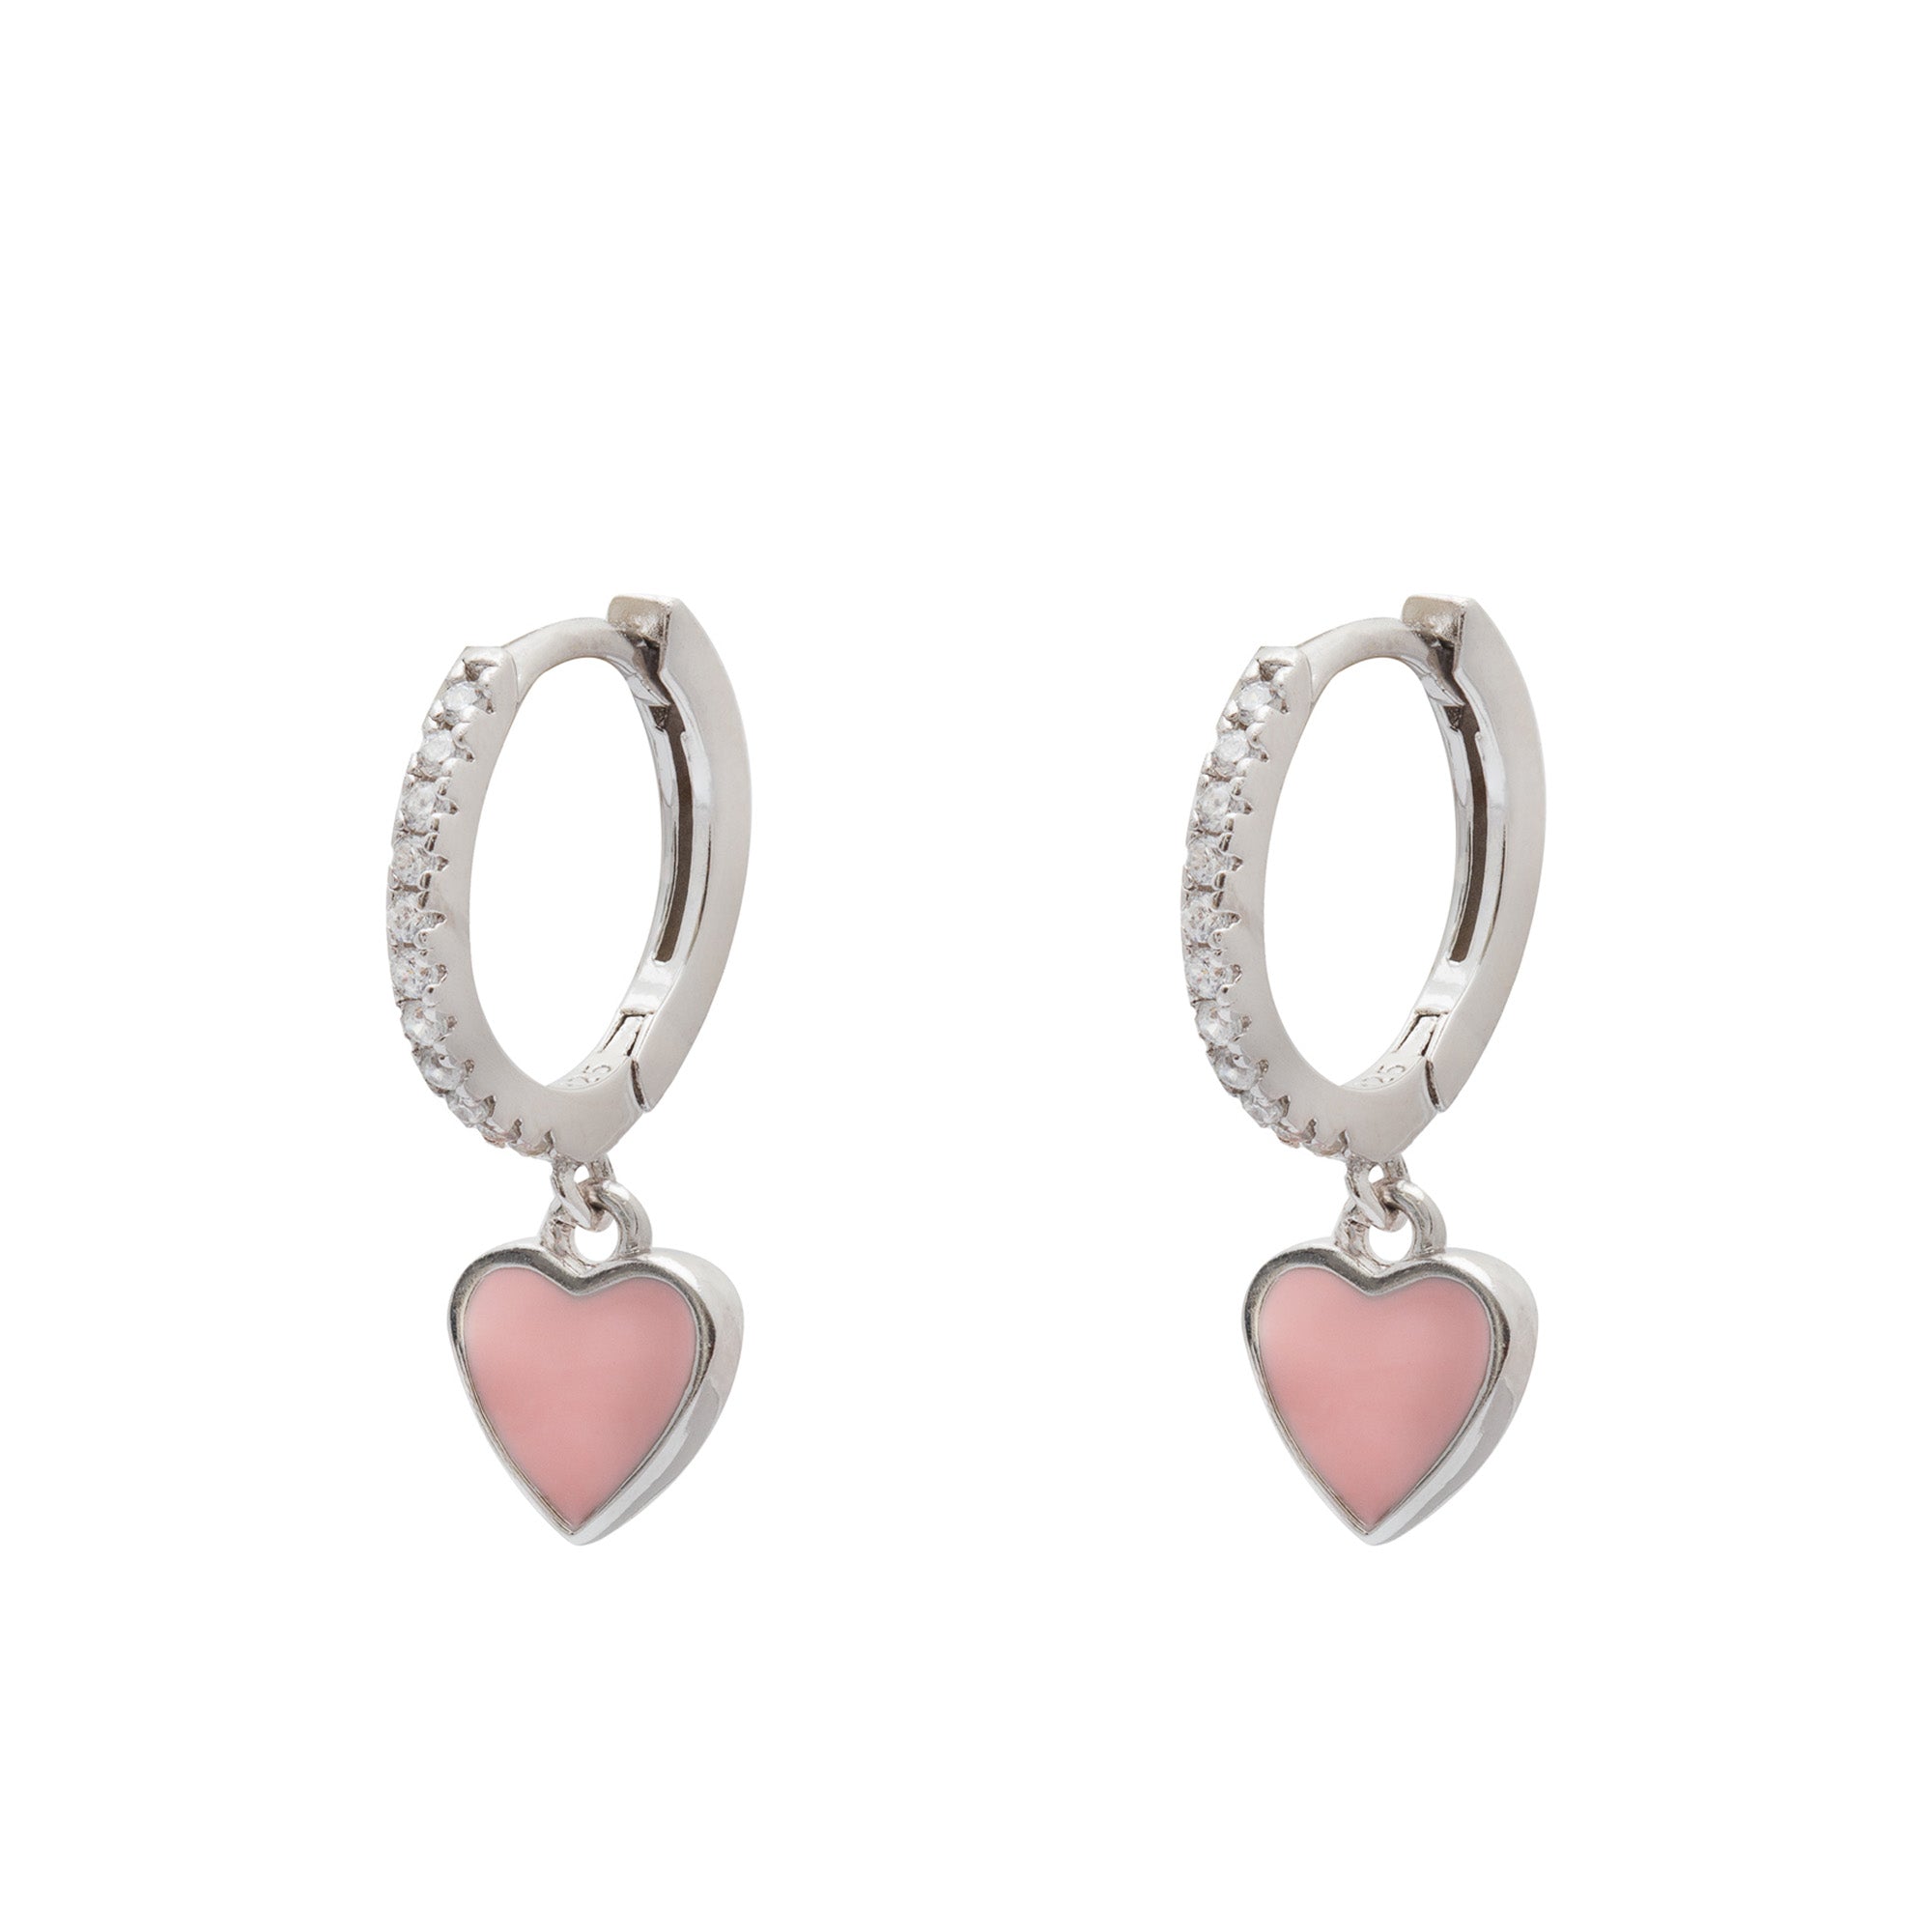 Duo Jewellery Earrings Pink Duo enamel heart earrings